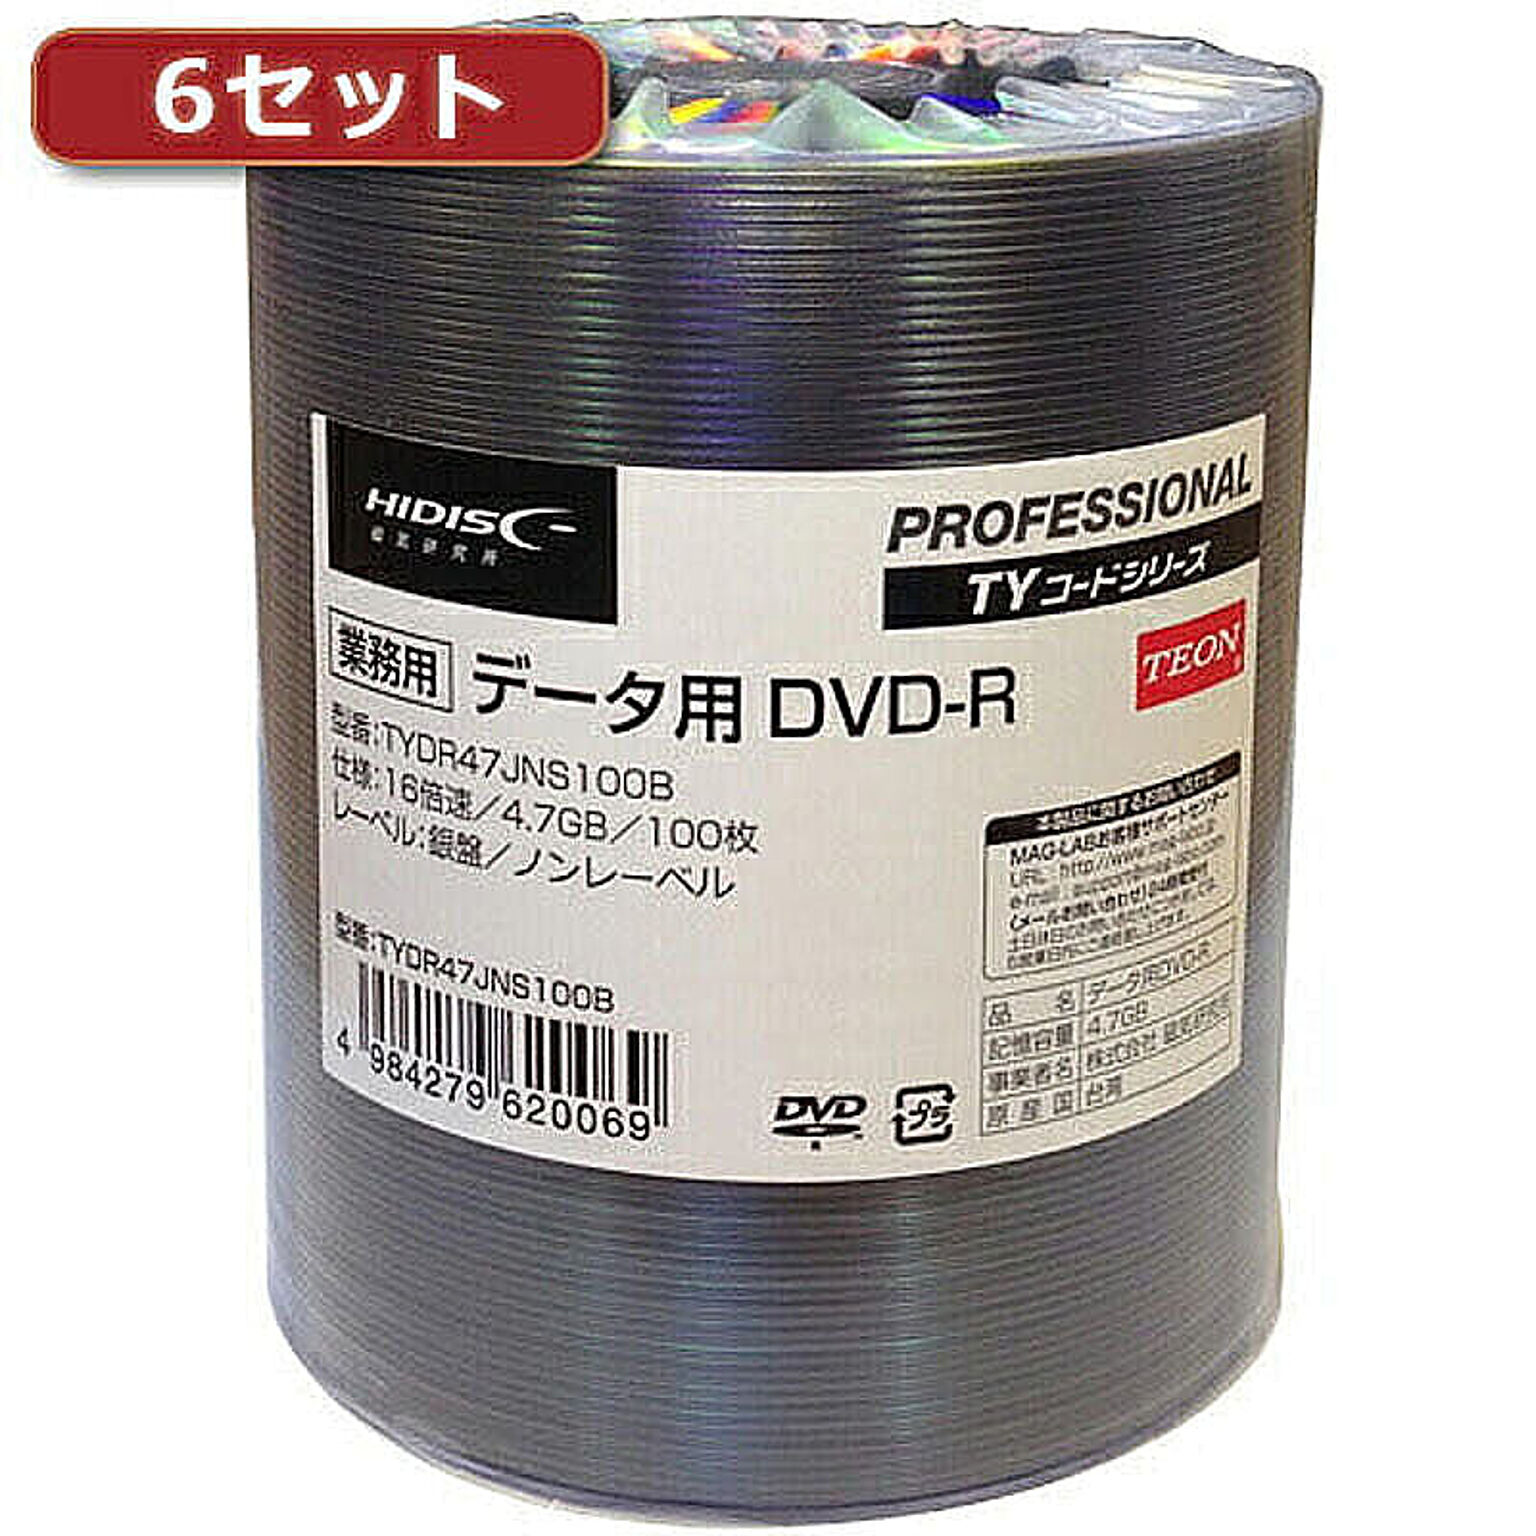 6セットHI DISC DVD-R(データ用)高品質 100枚入 TYDR47JNS100BX6 管理No. 4560352838196